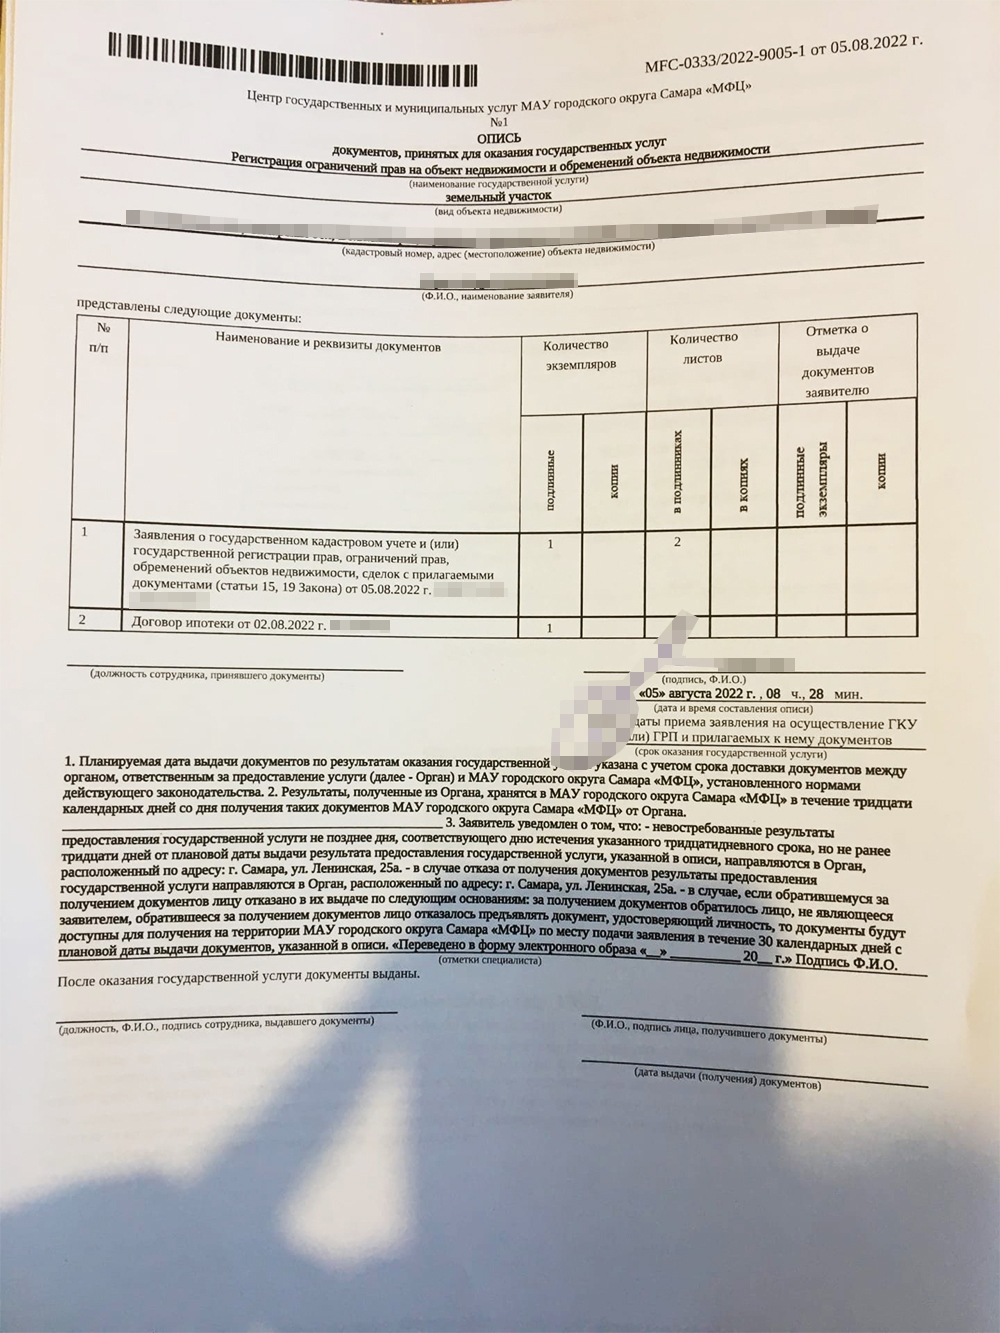 Опись документов, которую мужу выдали в МФЦ